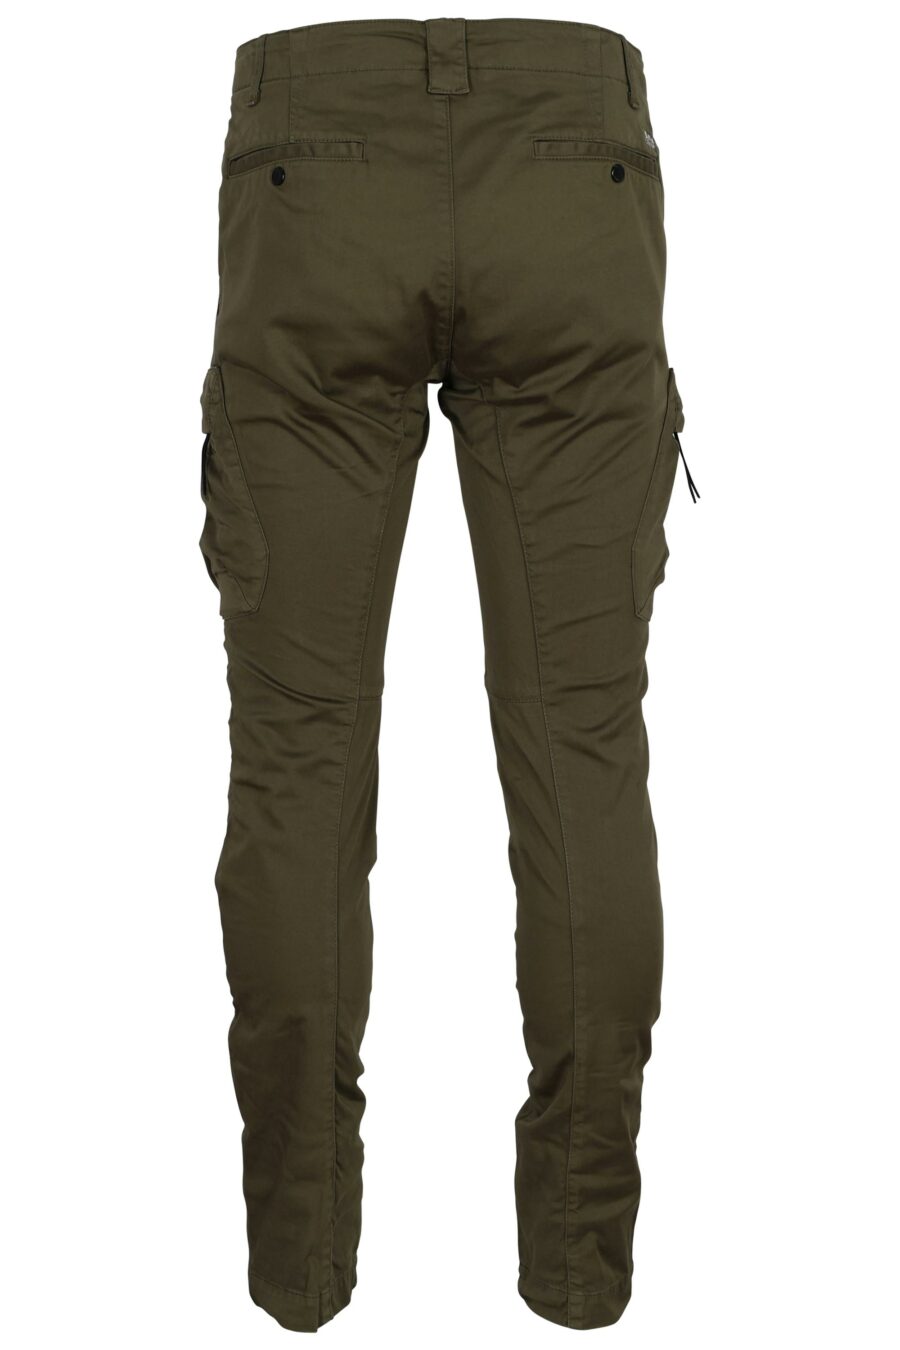 Pantalon cargo vert militaire avec lentille logo - 7620943722628 2